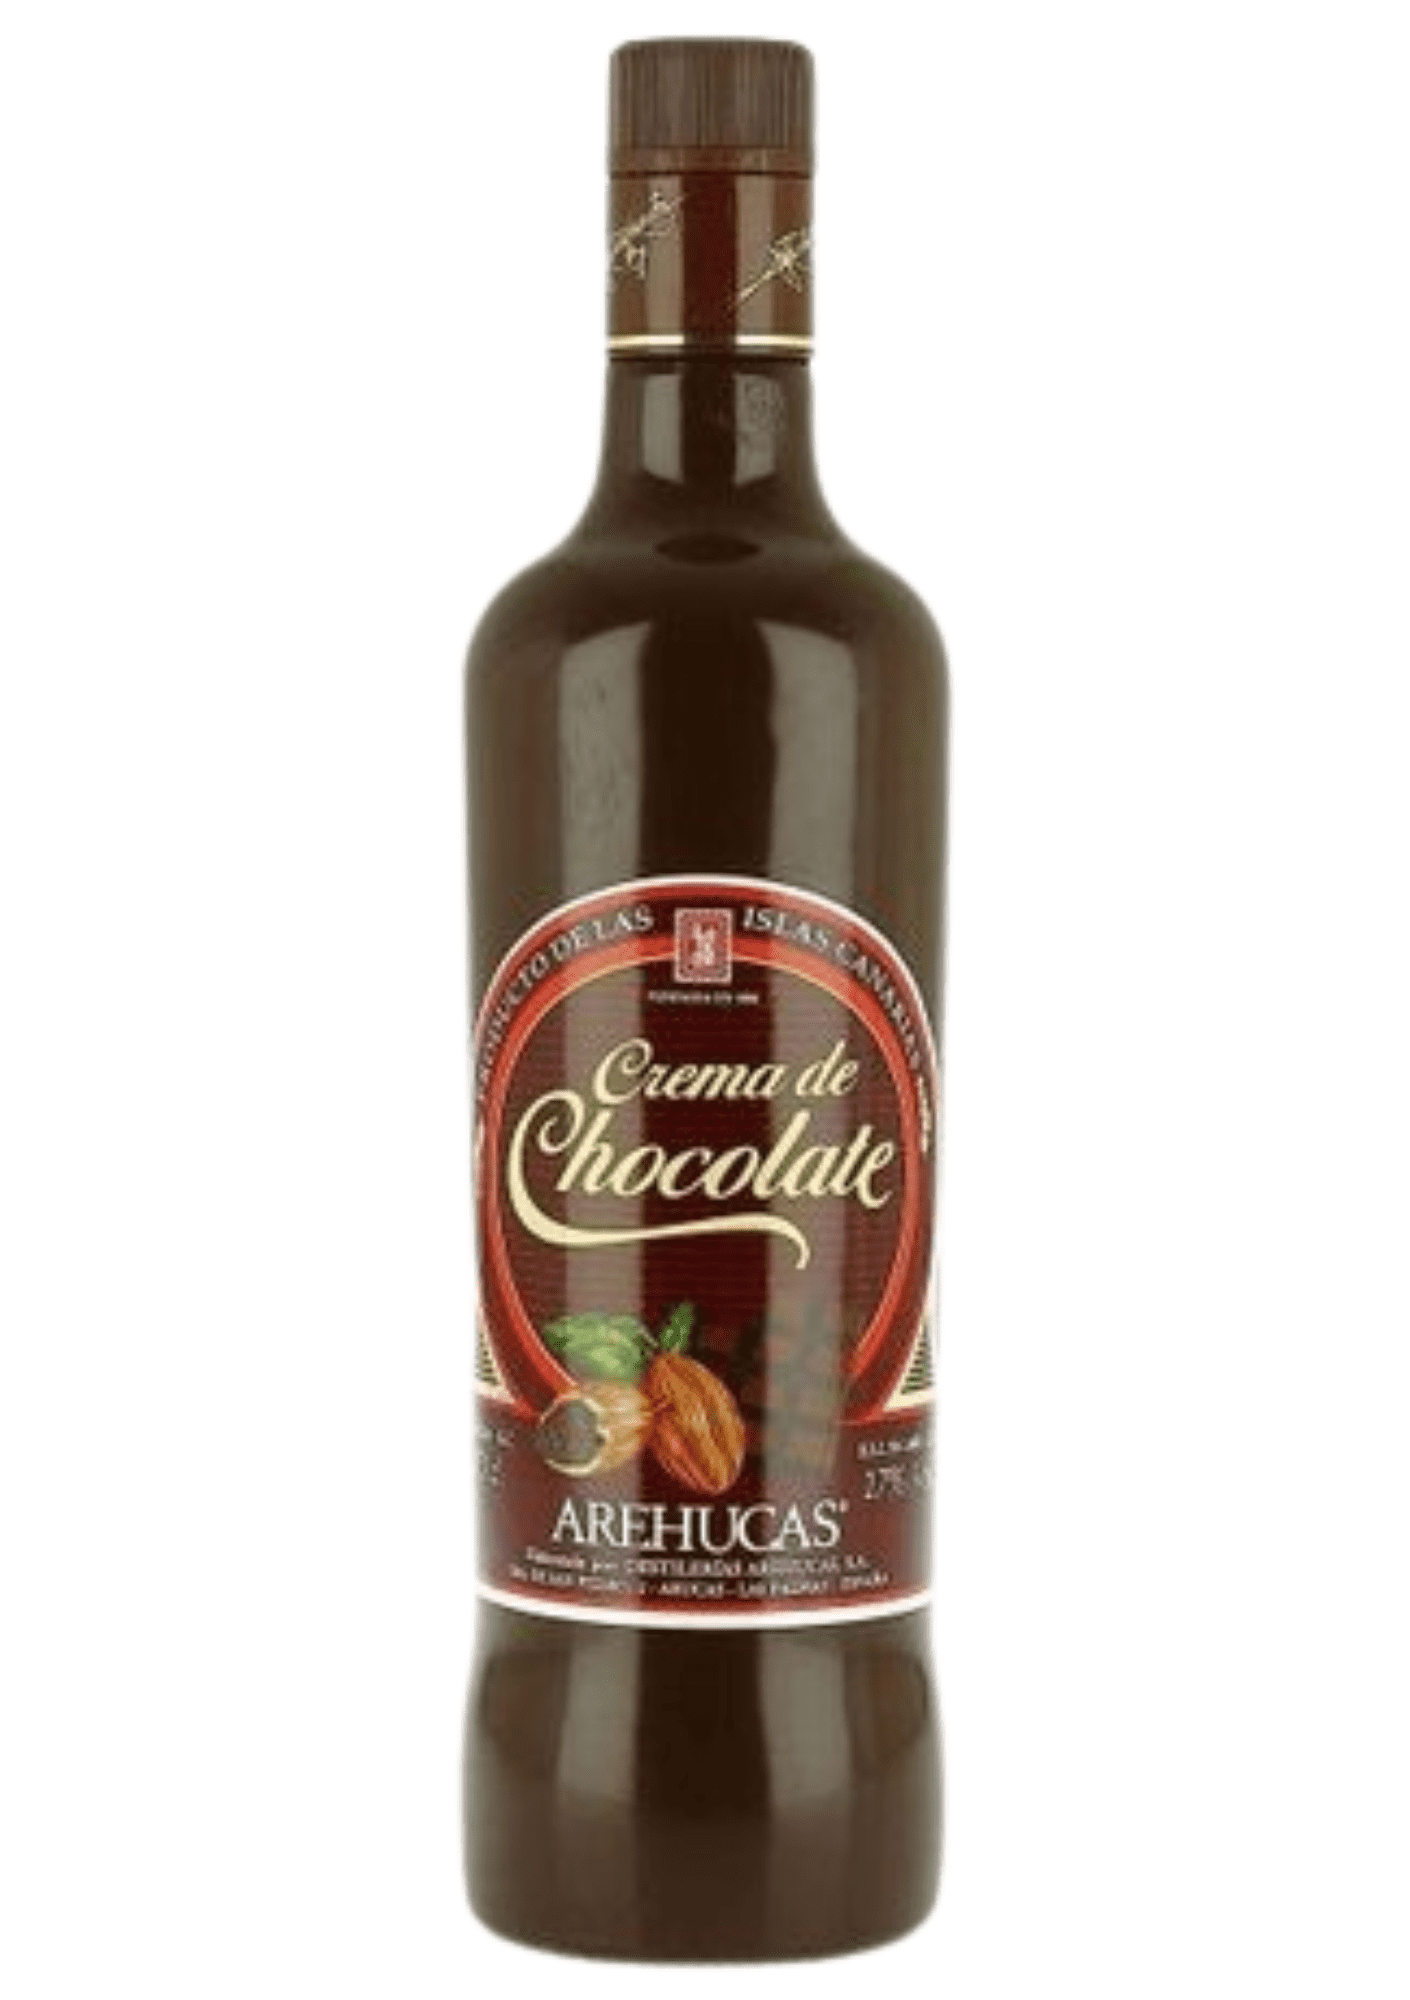 Arehucas Crema de Chocolate 17% 0,7 l